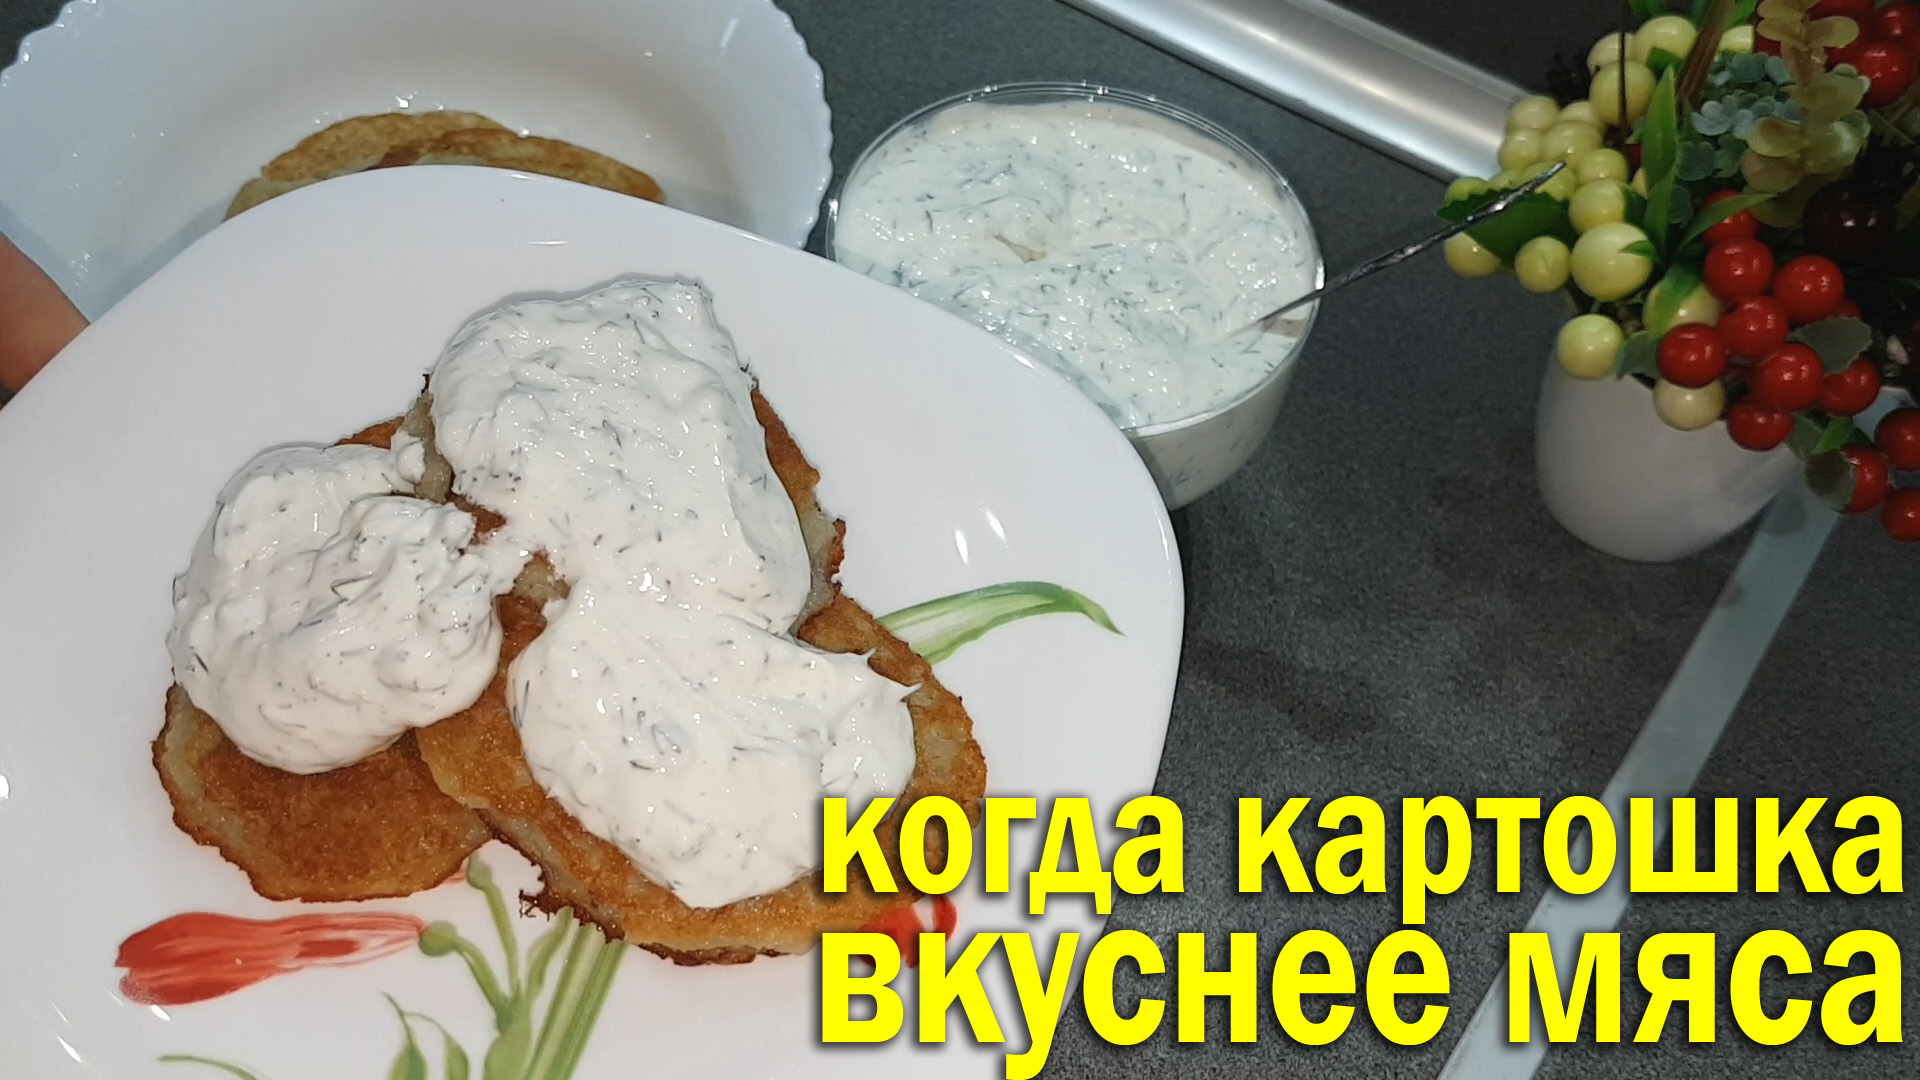 Когда картошка вкуснее мяса +соус. Рецепт белорусских драников.